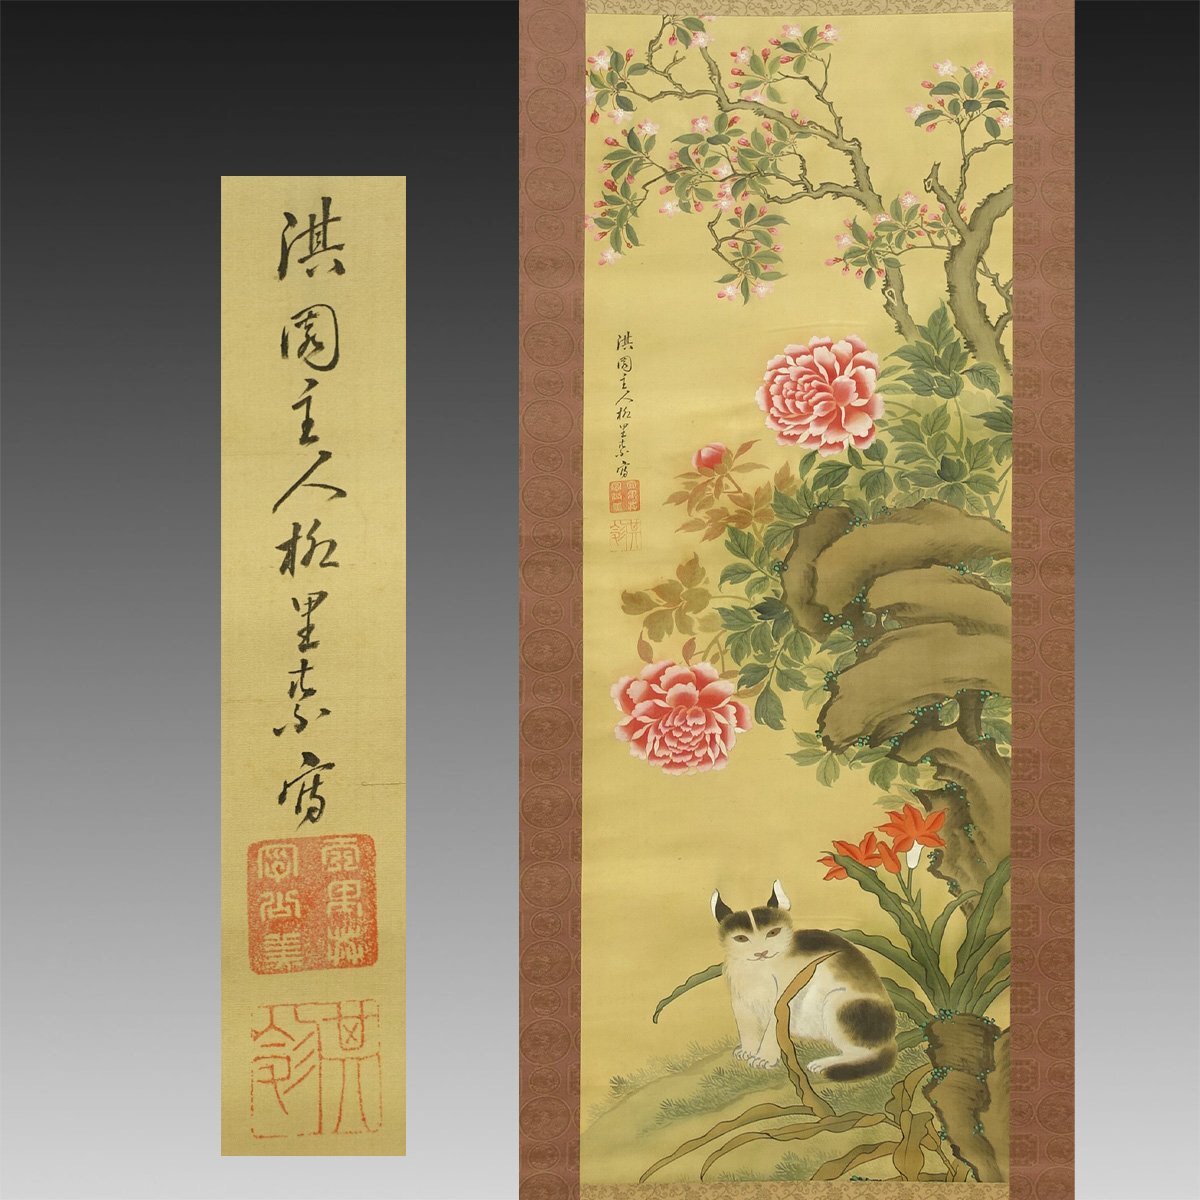 [कॉपी] किमोन◆ यानागिसावा कीन (यानागिरी क्यो) पेओनी फूल और बिल्लियाँ 1 चौड़ाई पुरानी लिखावट पुराना दस्तावेज़ पुरानी किताब जापानी पेंटिंग पशु पेंटिंग साहित्यिक पेंटिंग चीनी पेंटिंग चाय समारोह समुराई यमातोकोरियामा समुराई मध्य-ईदो काल, कलाकृति, किताब, लटका हुआ स्क्रॉल